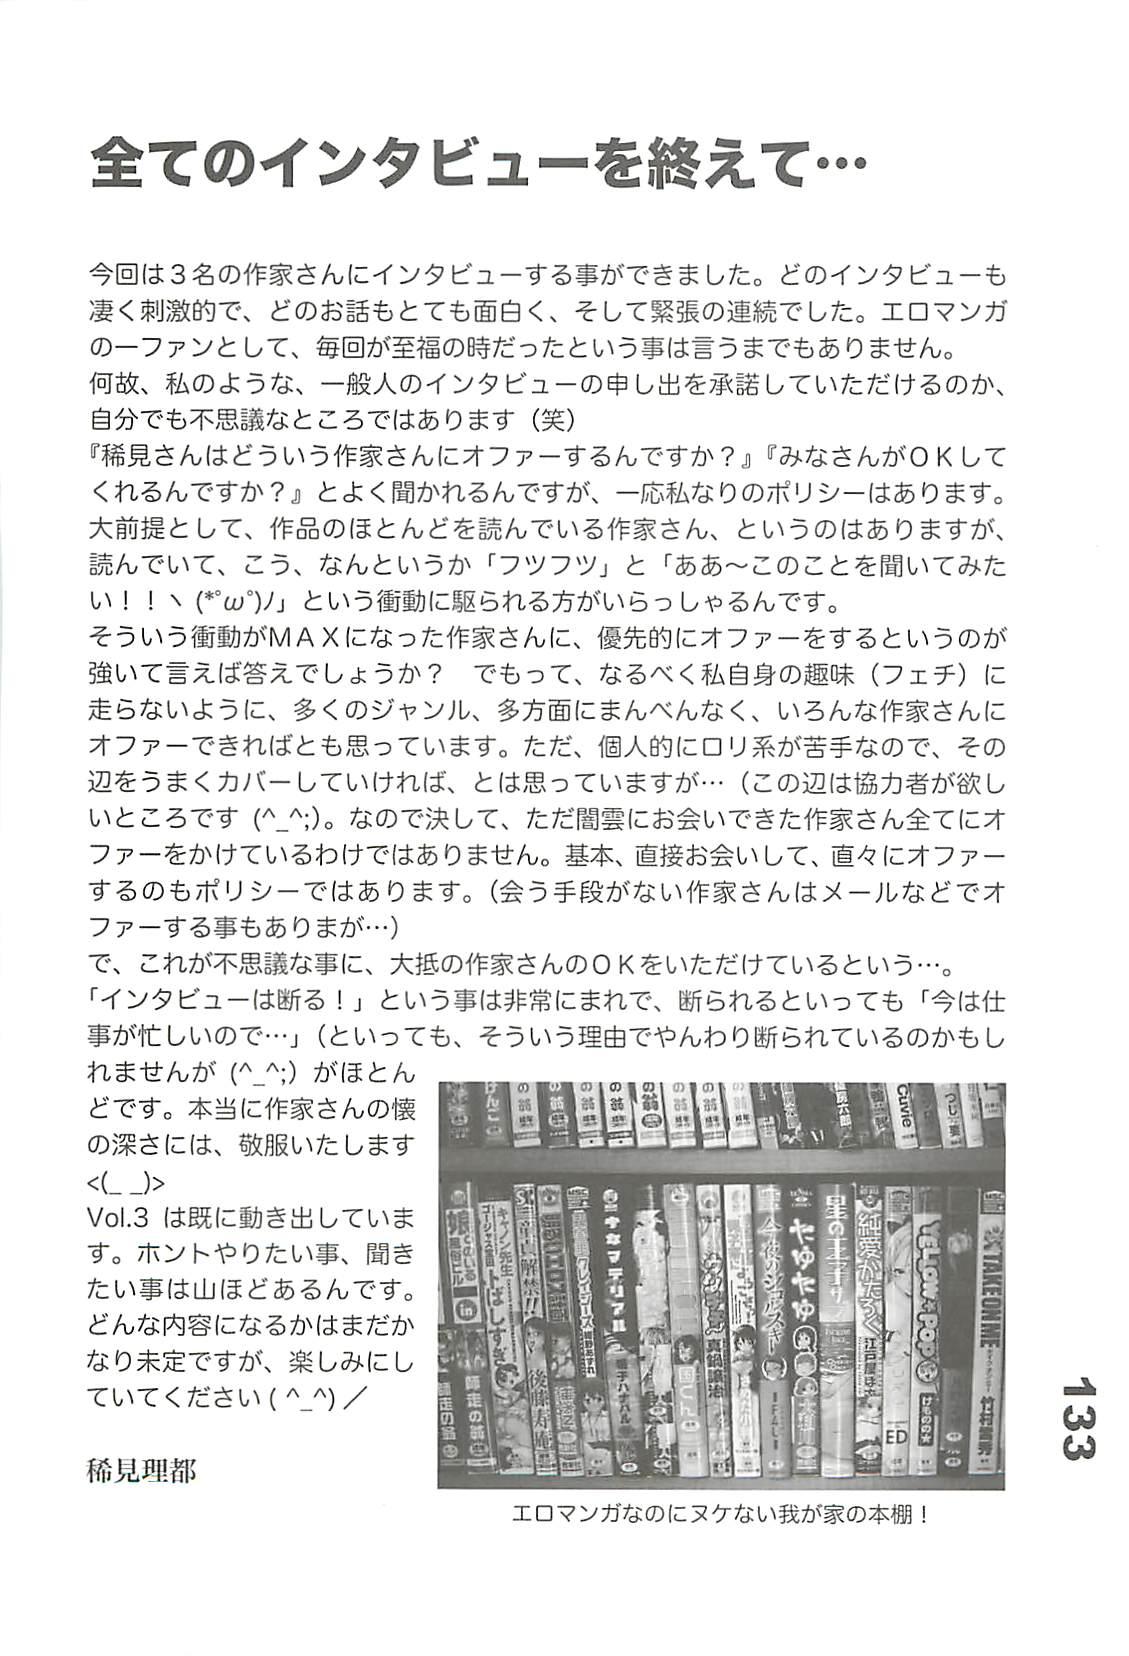 Ero-Manga no Genba Vol. 2 131